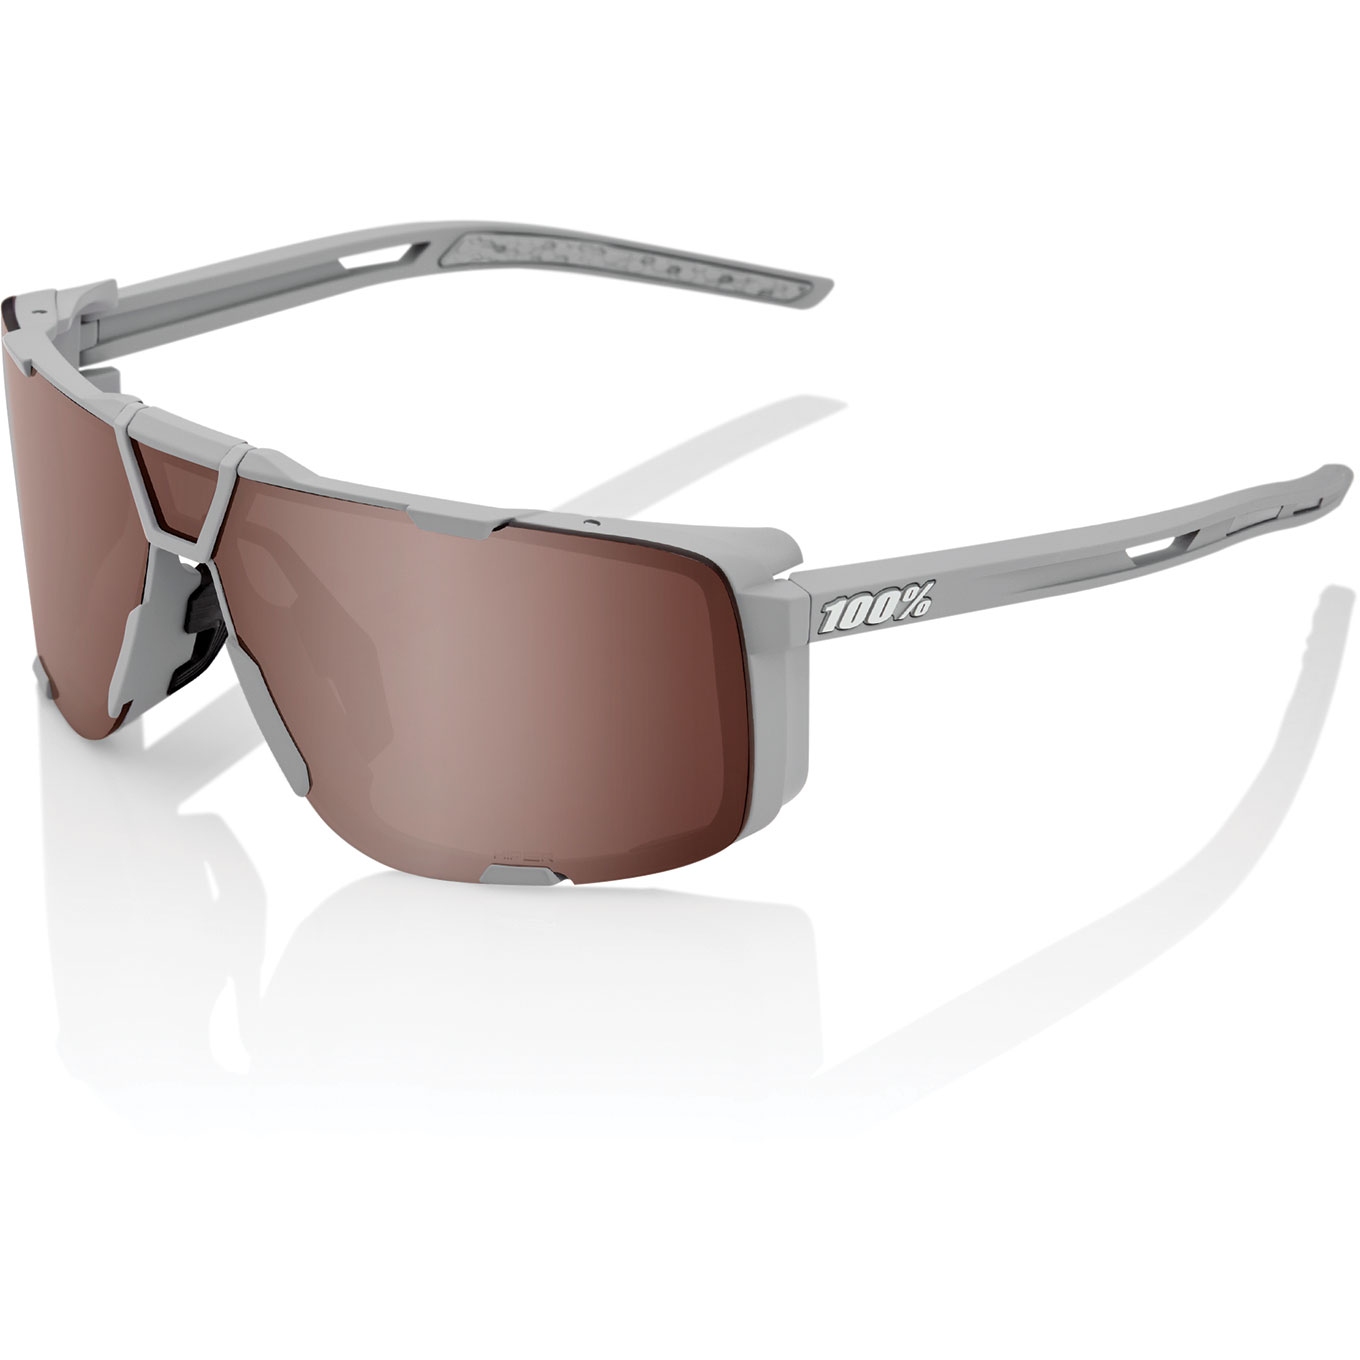 Produktbild von 100% Eastcraft Brille - HiPER Mirror Lens - Soft Tact Cool Grey / HiPER Crimson Silver